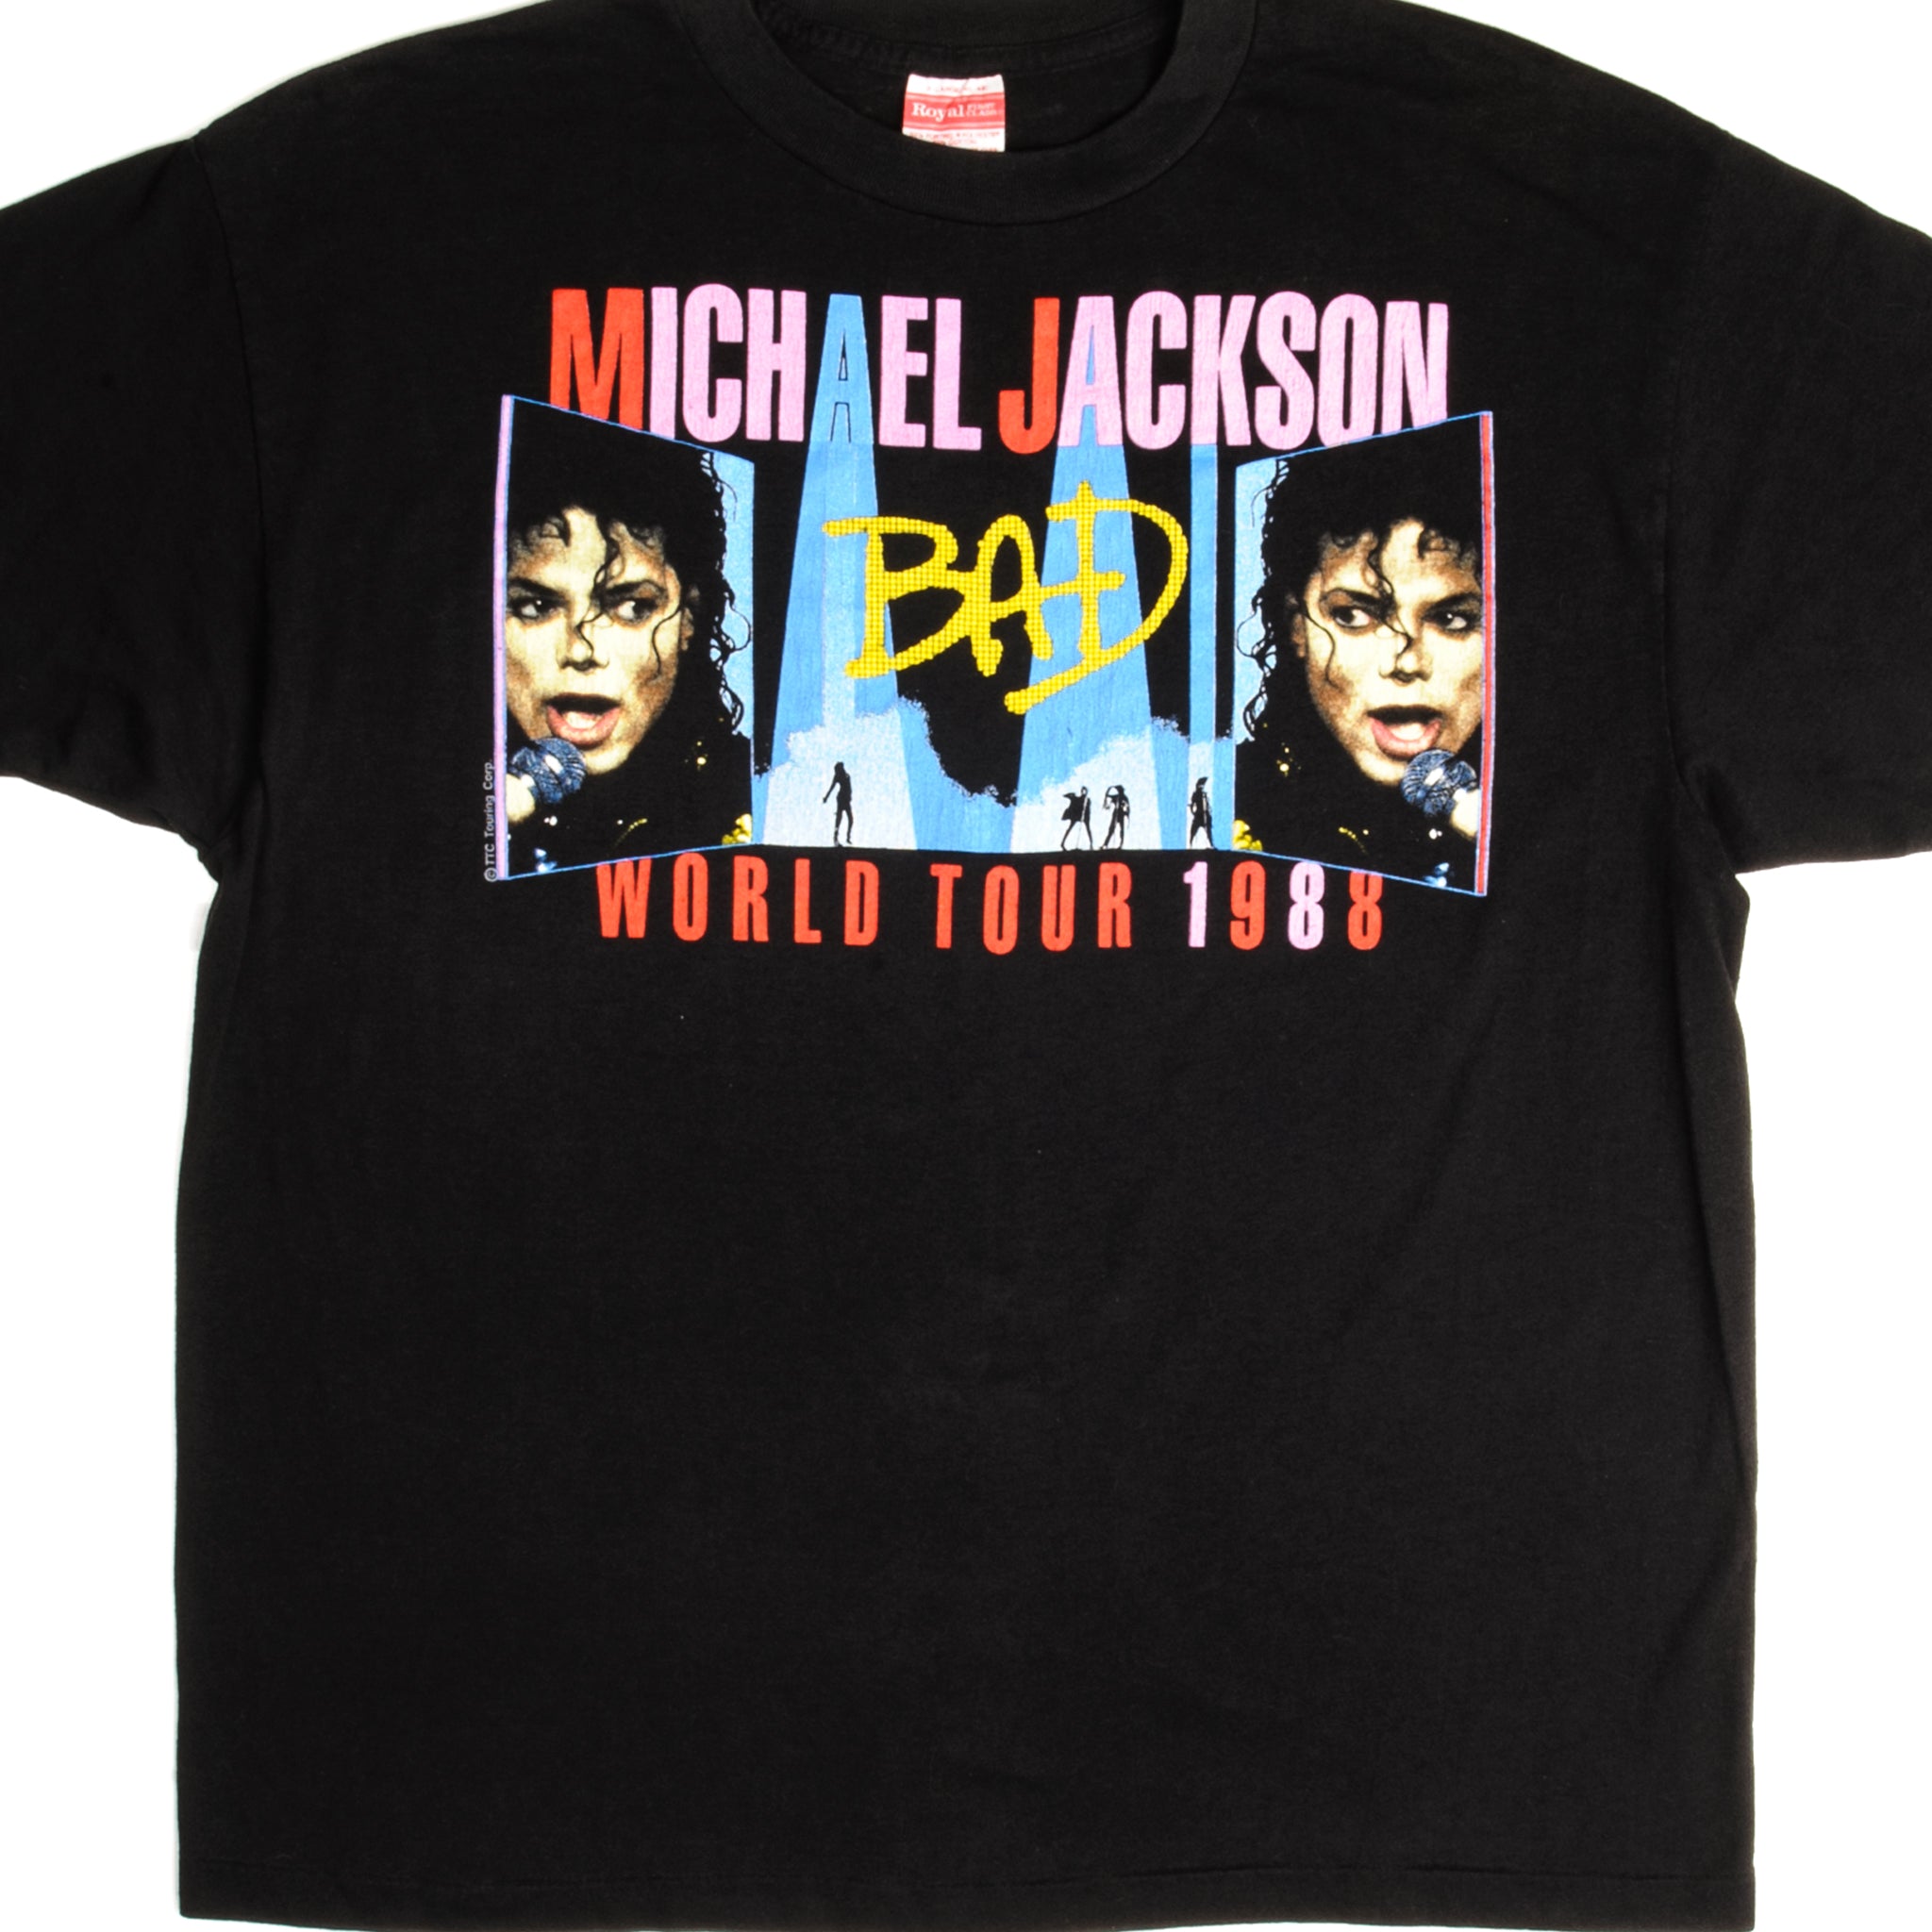 お買い得モデル 80s マイケルジャクソン ツアーT 美品 Lサイズ Tシャツ